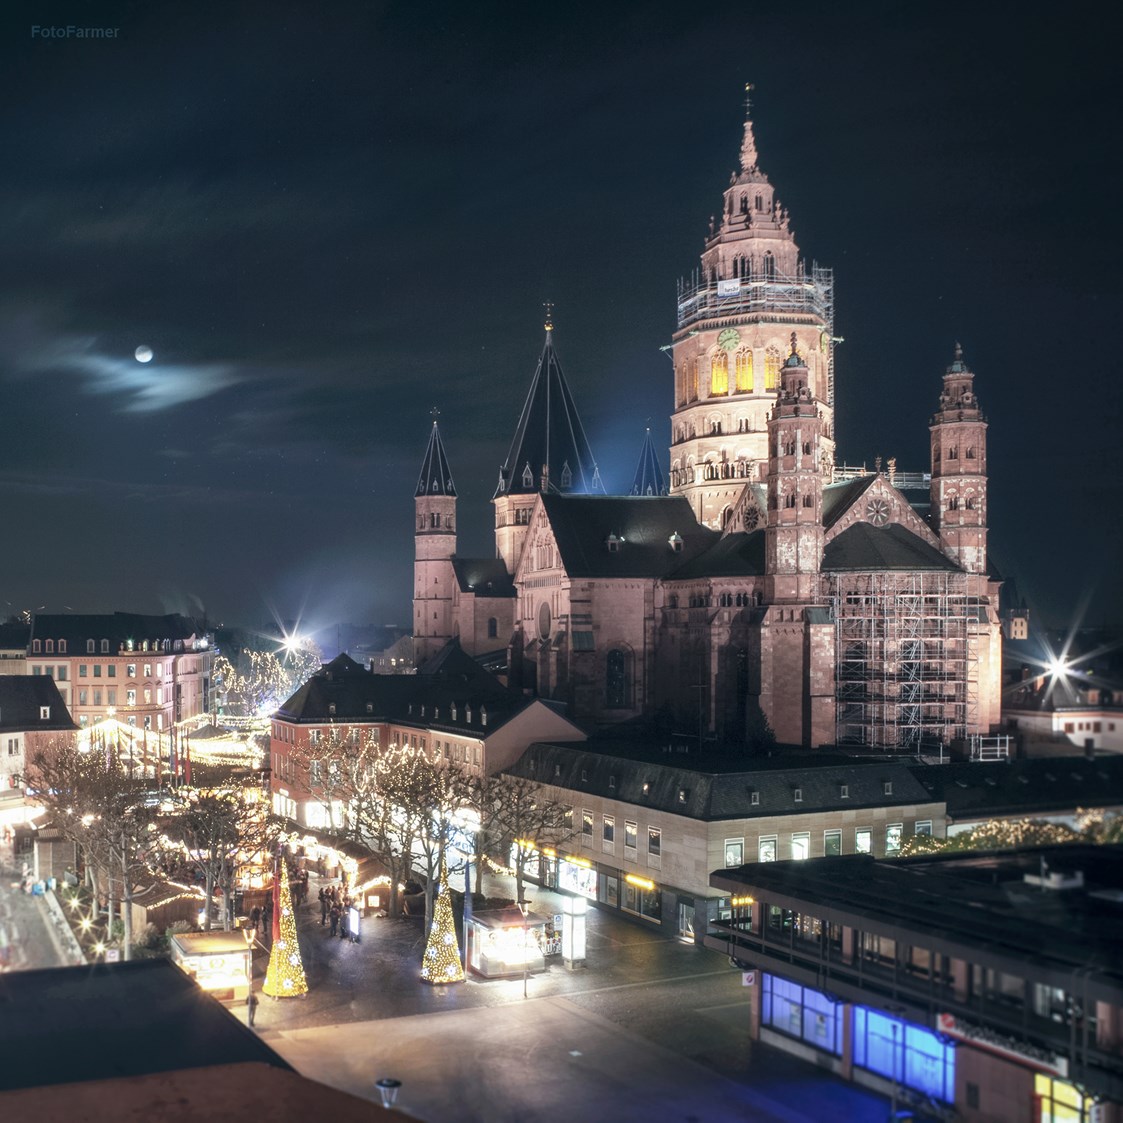 Einkaufen Mainz: Fotofarmer Mainz